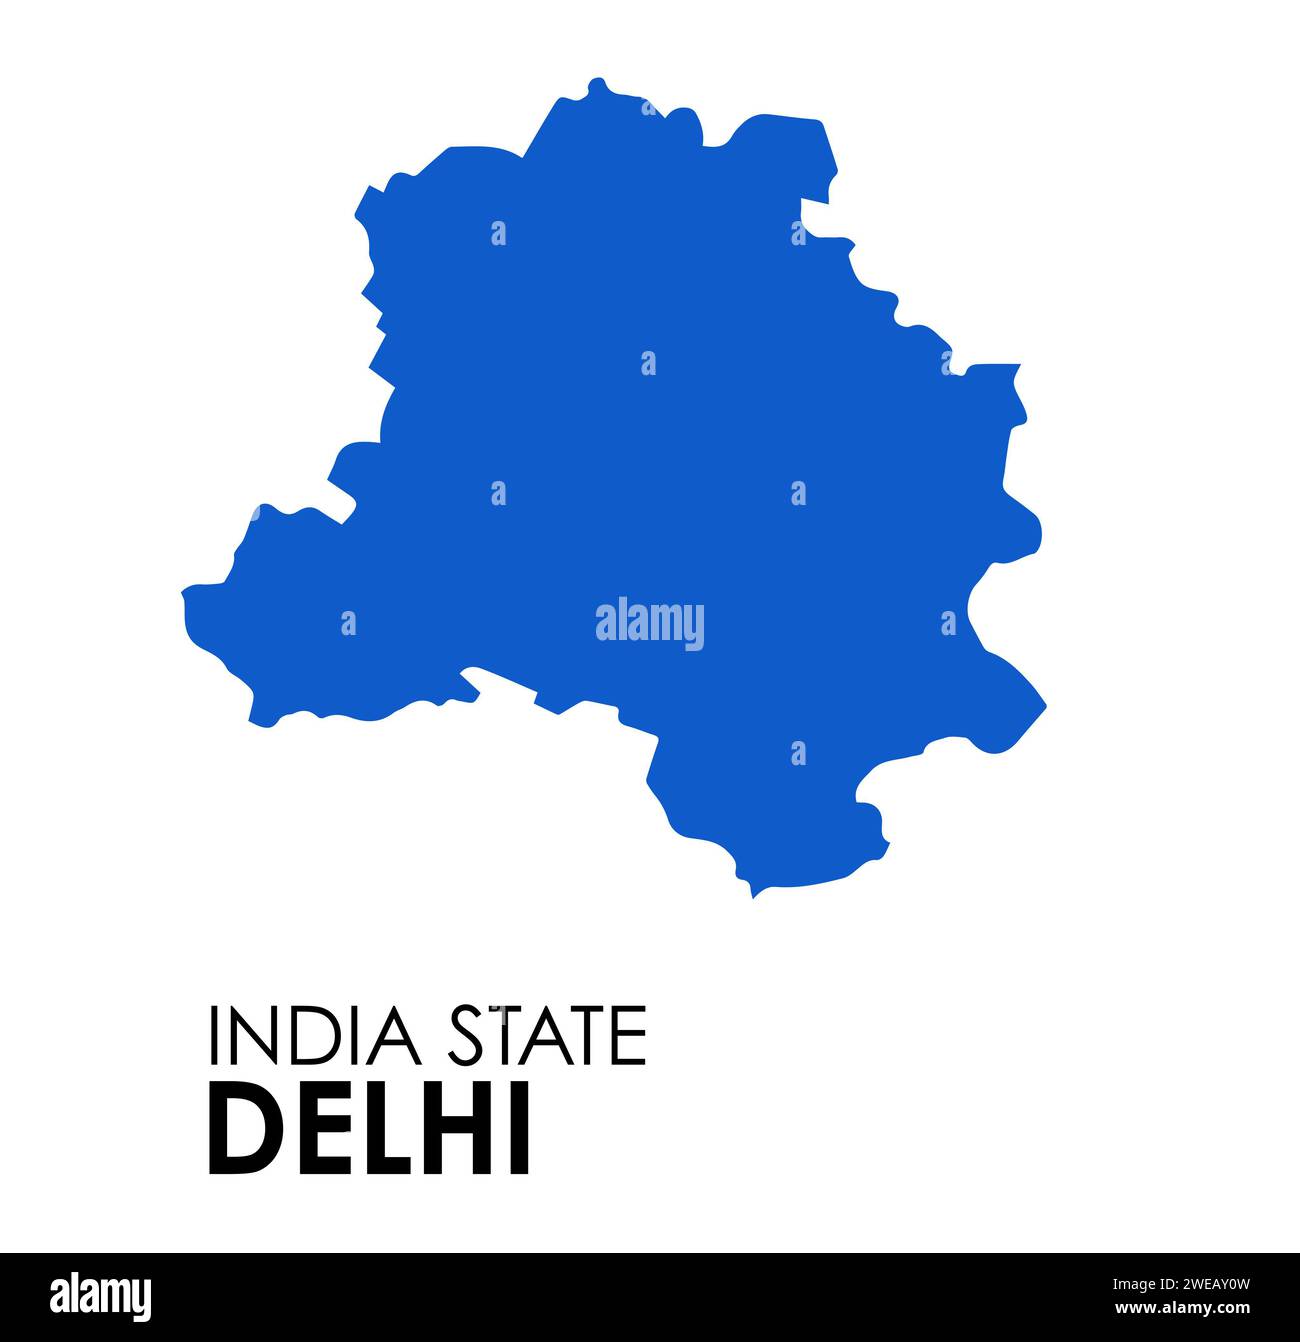 Mapa de Delhi del estado indio. Delhi mapa ilustración vectorial. Mapa vectorial de Delhi sobre fondo blanco. Foto de stock